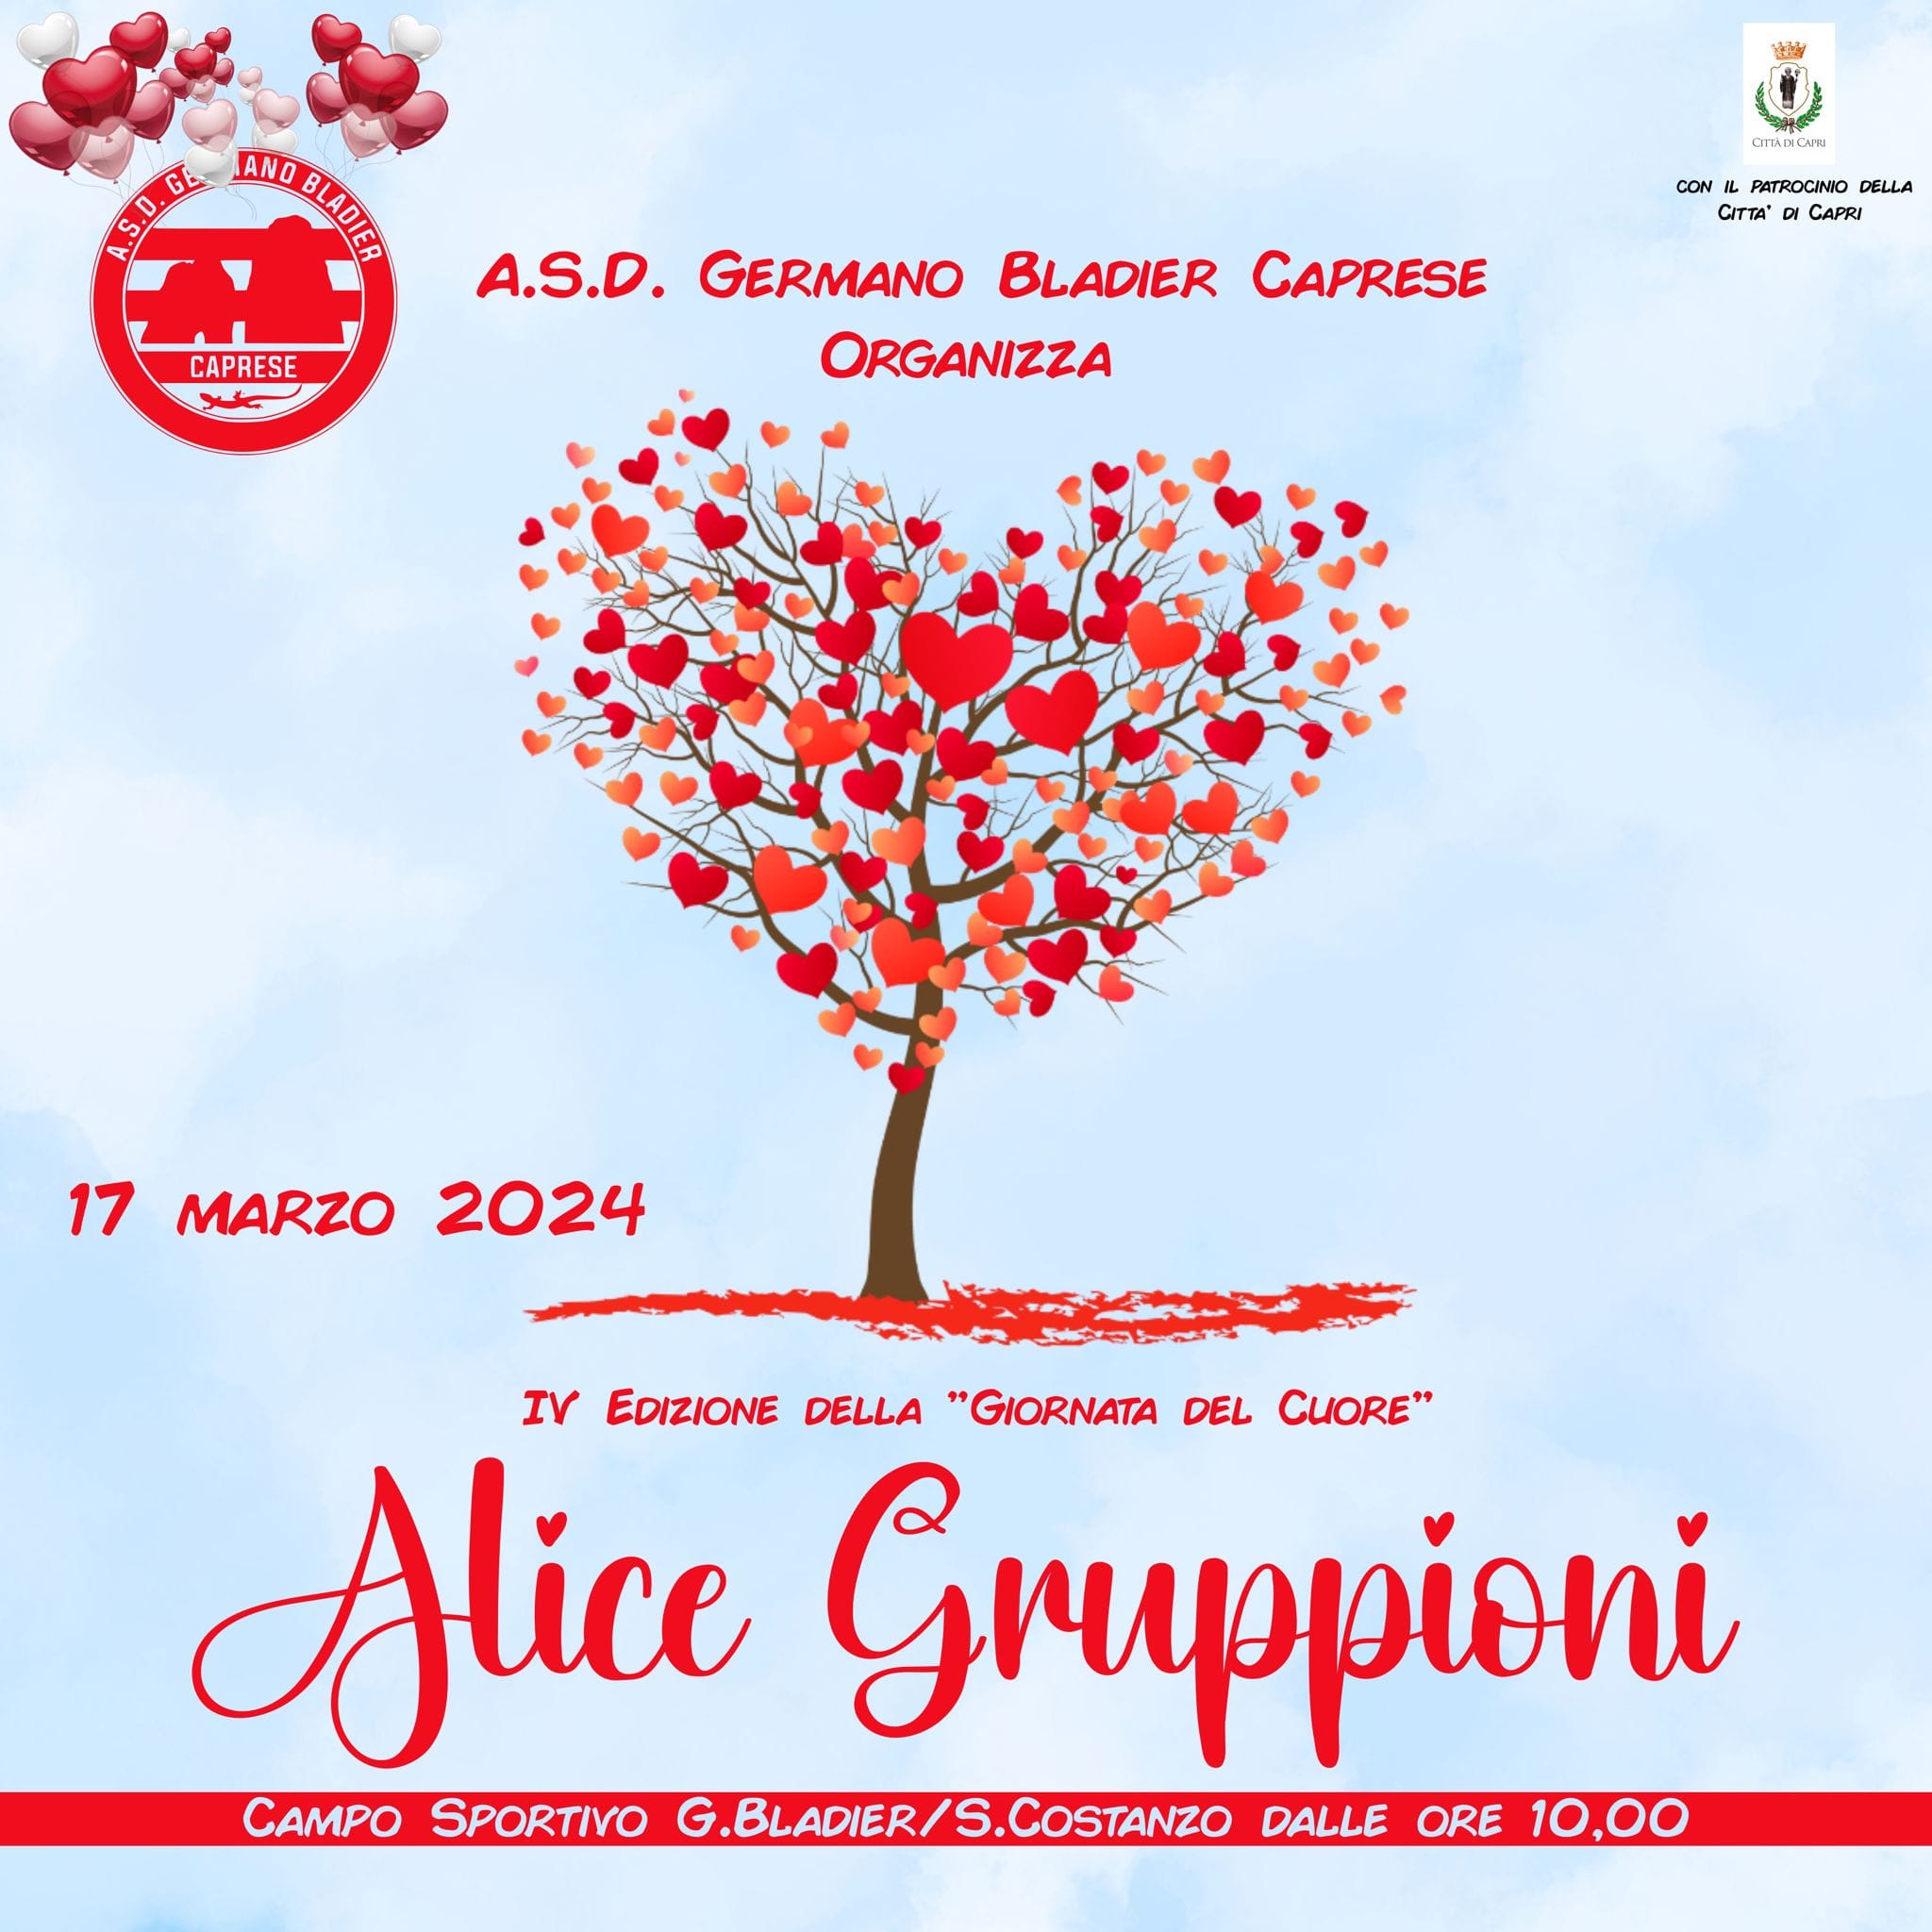 Giornata del cuore “Alice Gruppioni”, evento sociale e solidale tra sport e divertimento. Il programma della manifestazione